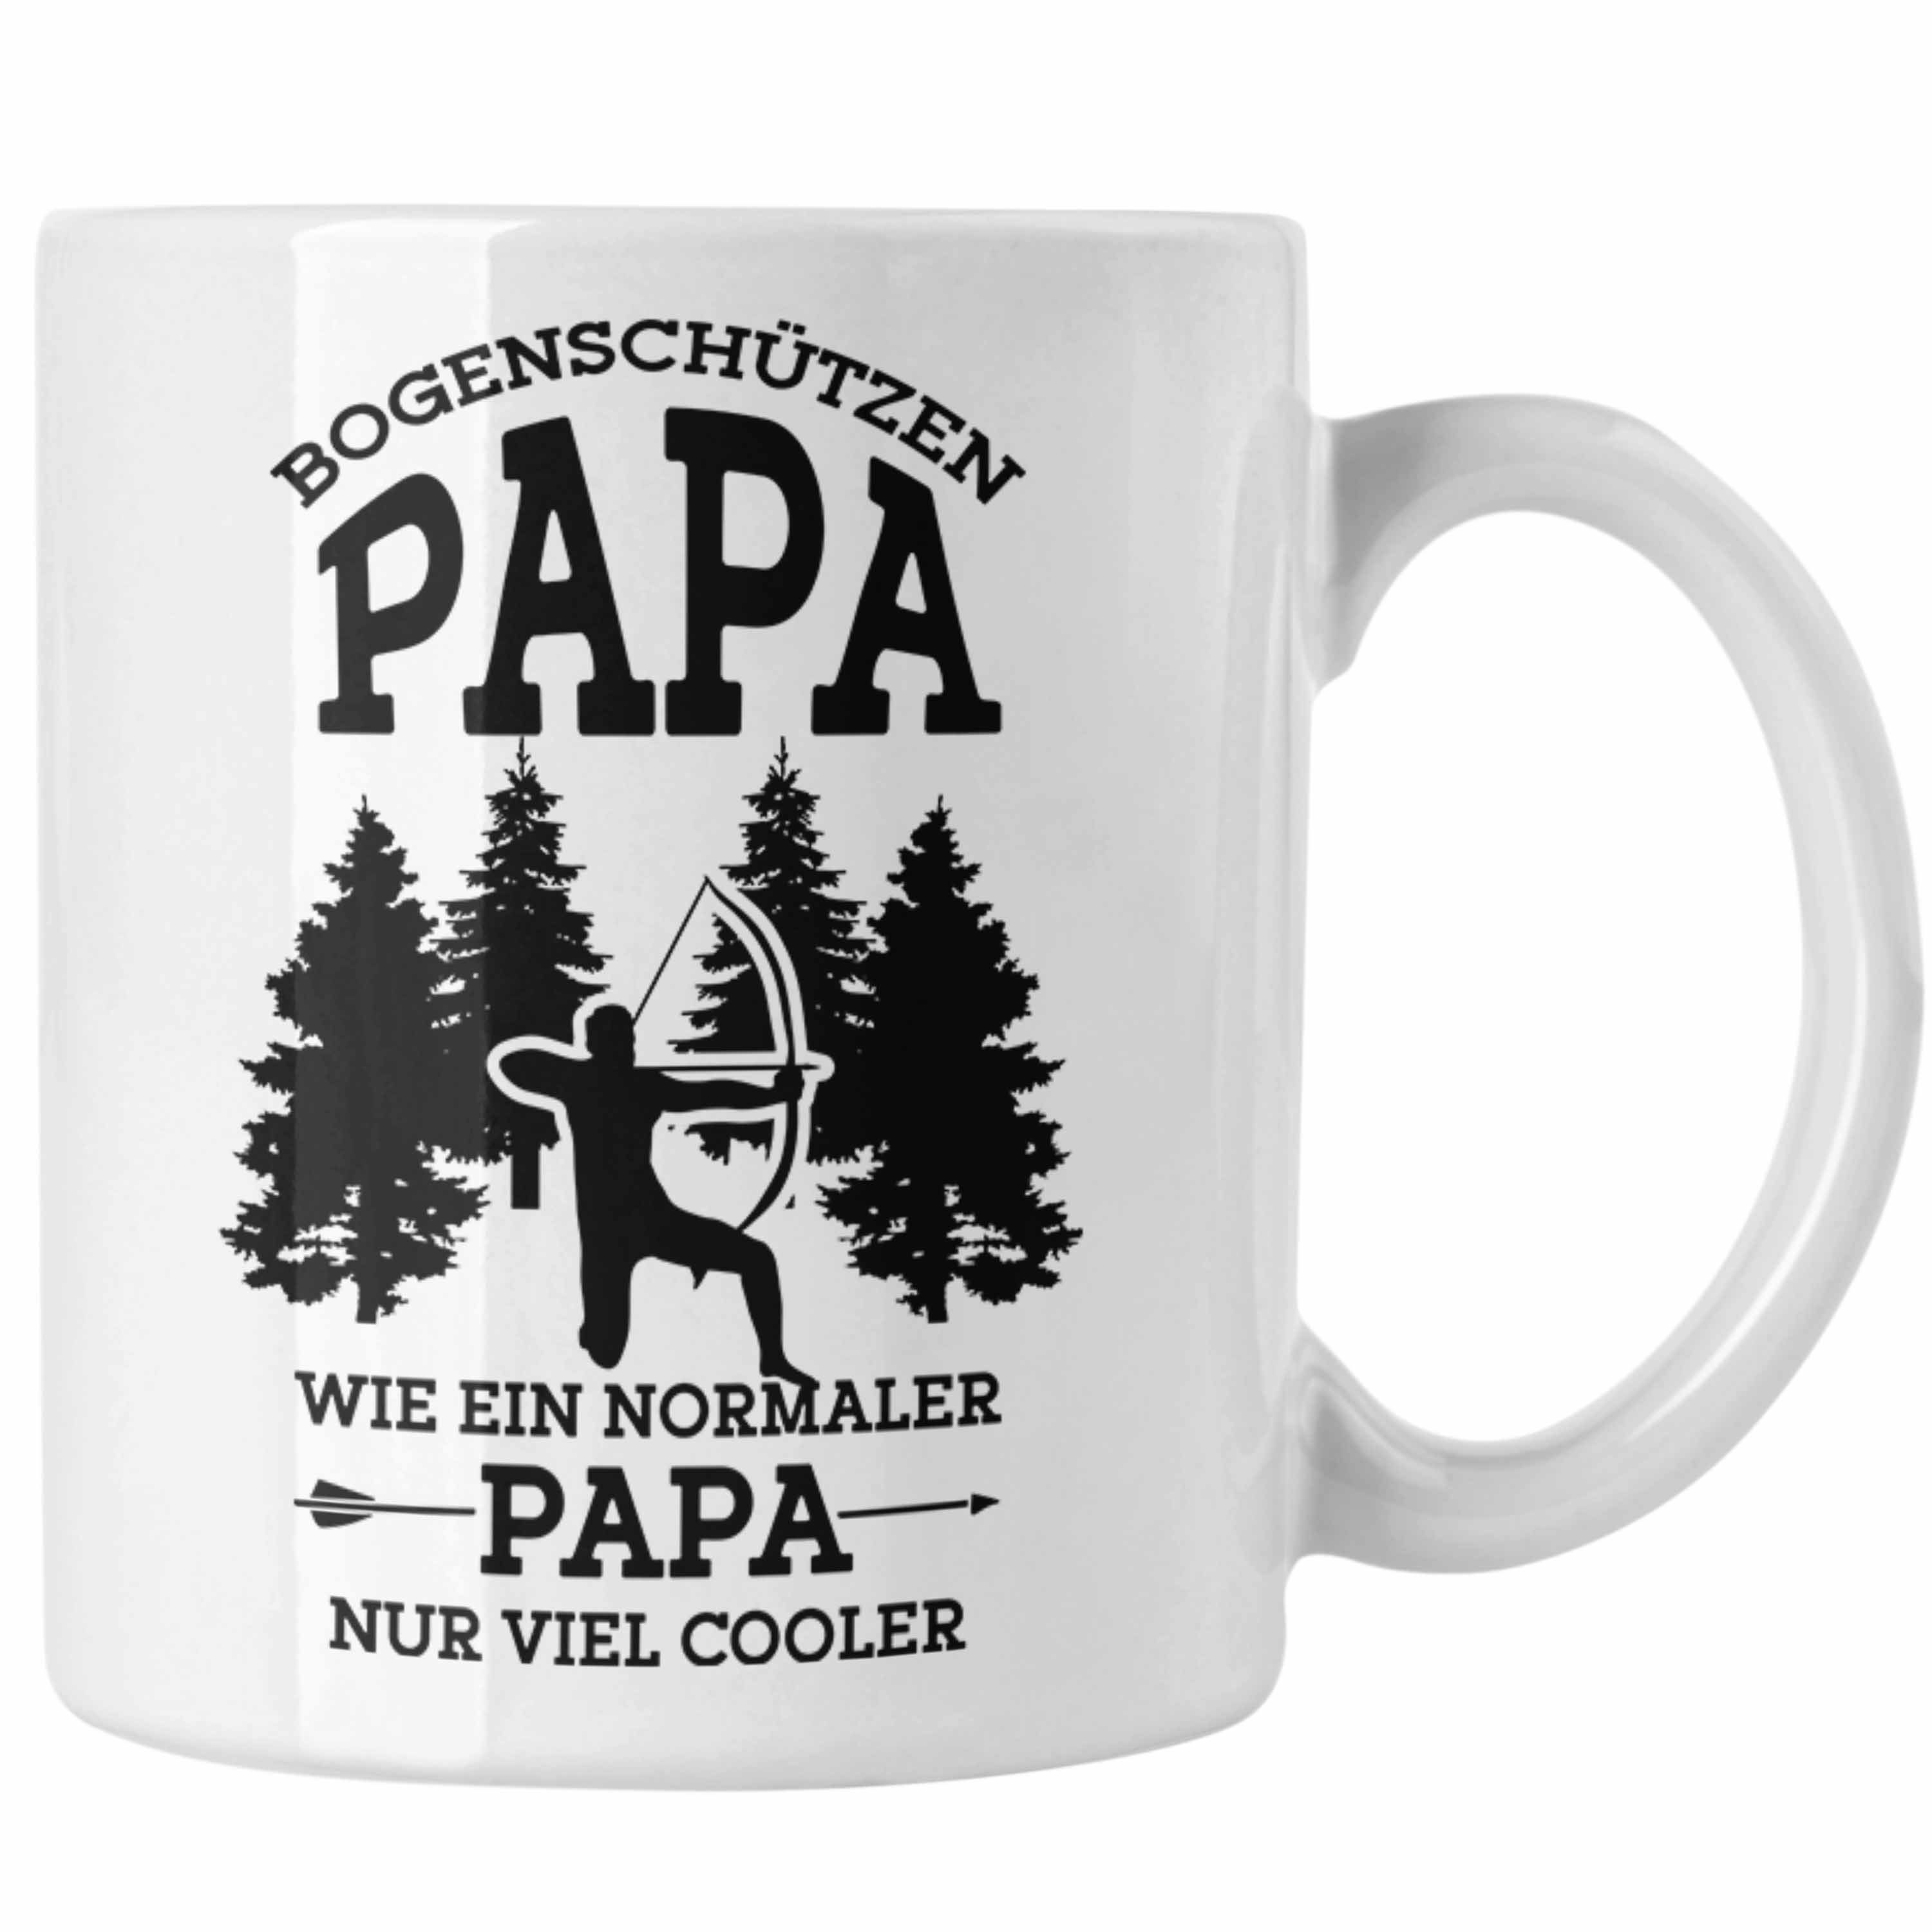 Trendation Tasse Lustige Bogenschießen Tasse für Papa Bogenschütze Geschenkidee Vatert Weiss